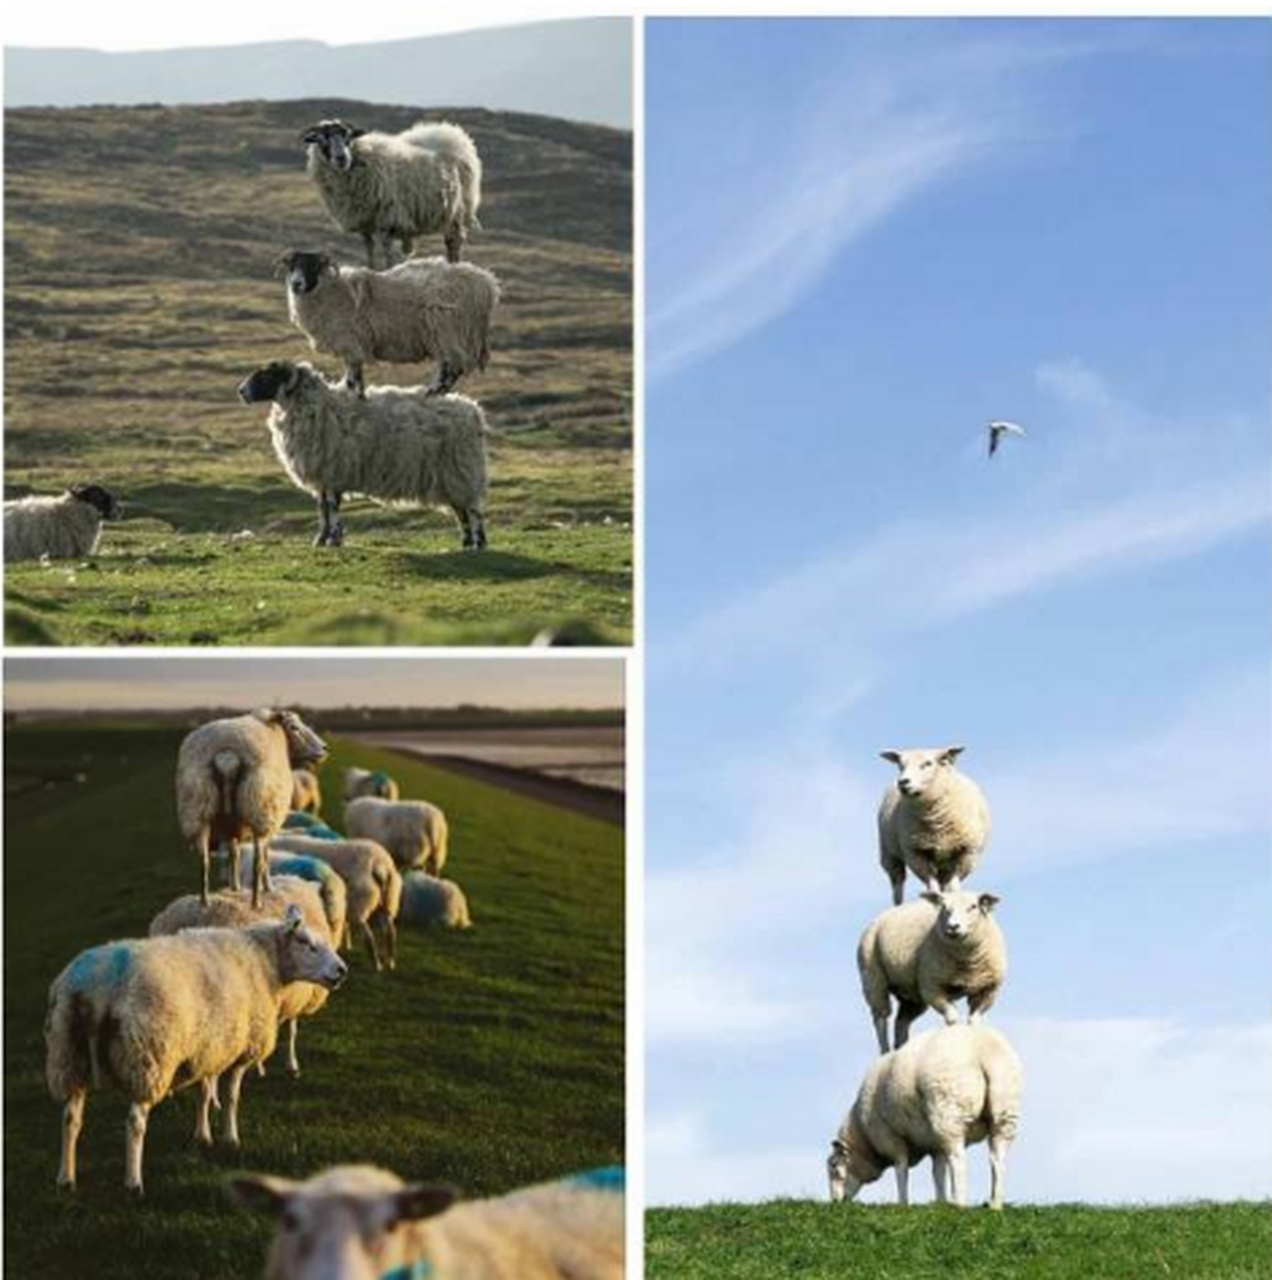 恒源祥广告羊羊羊图片